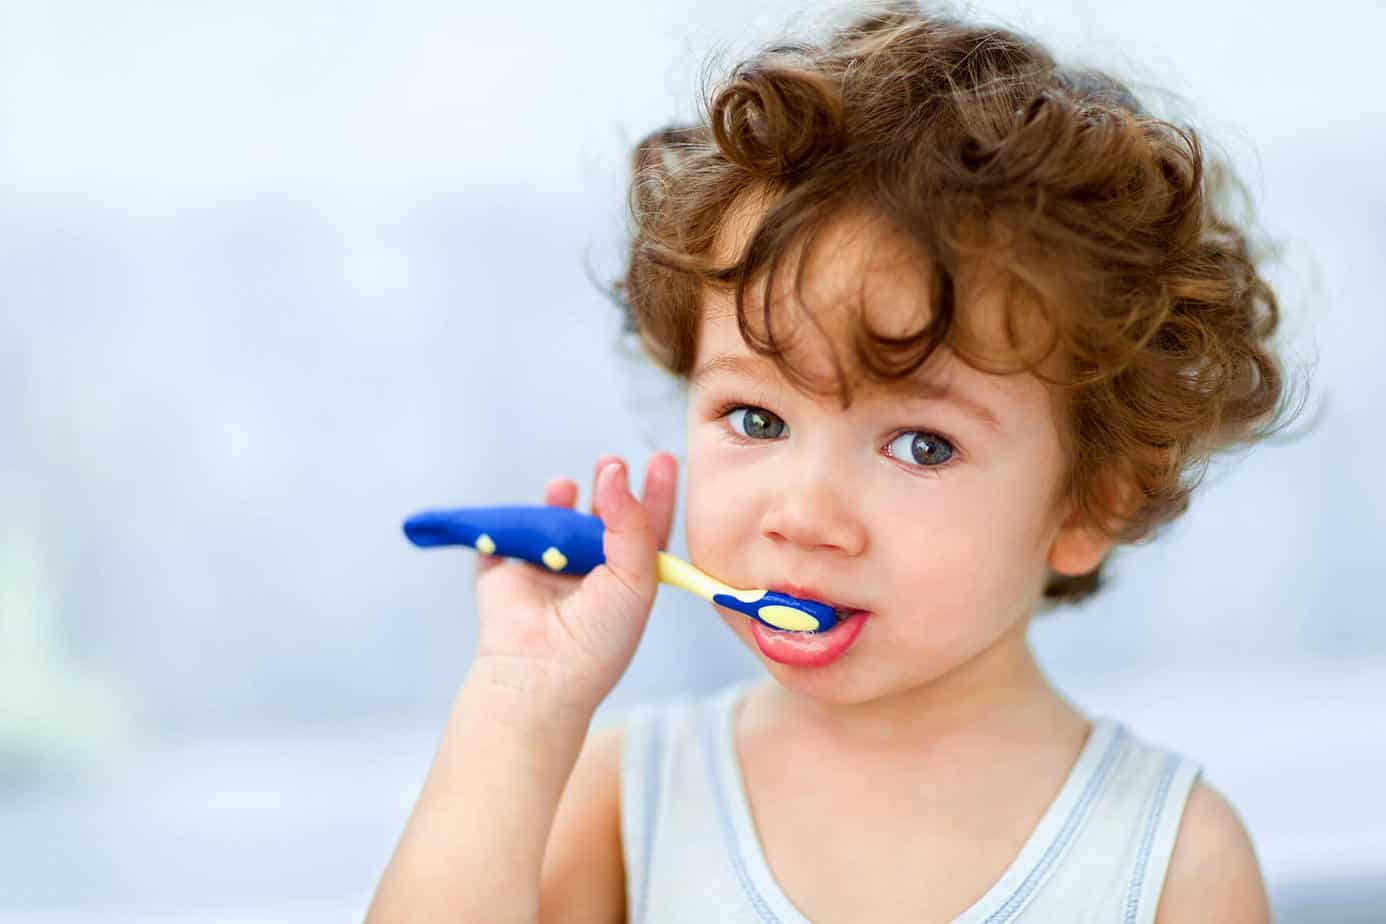 Βαθμολογία των καλύτερων παιδικών οδοντόβουρτσων για το 2020